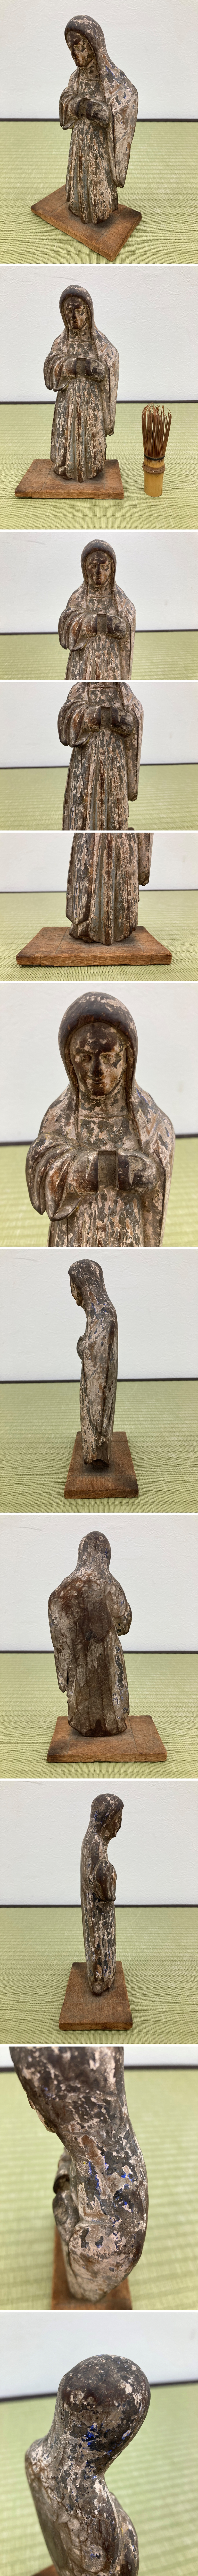 古木彫聖母マリア像彩色置物オブジェ時代物木製彫刻骨董品古美術品 